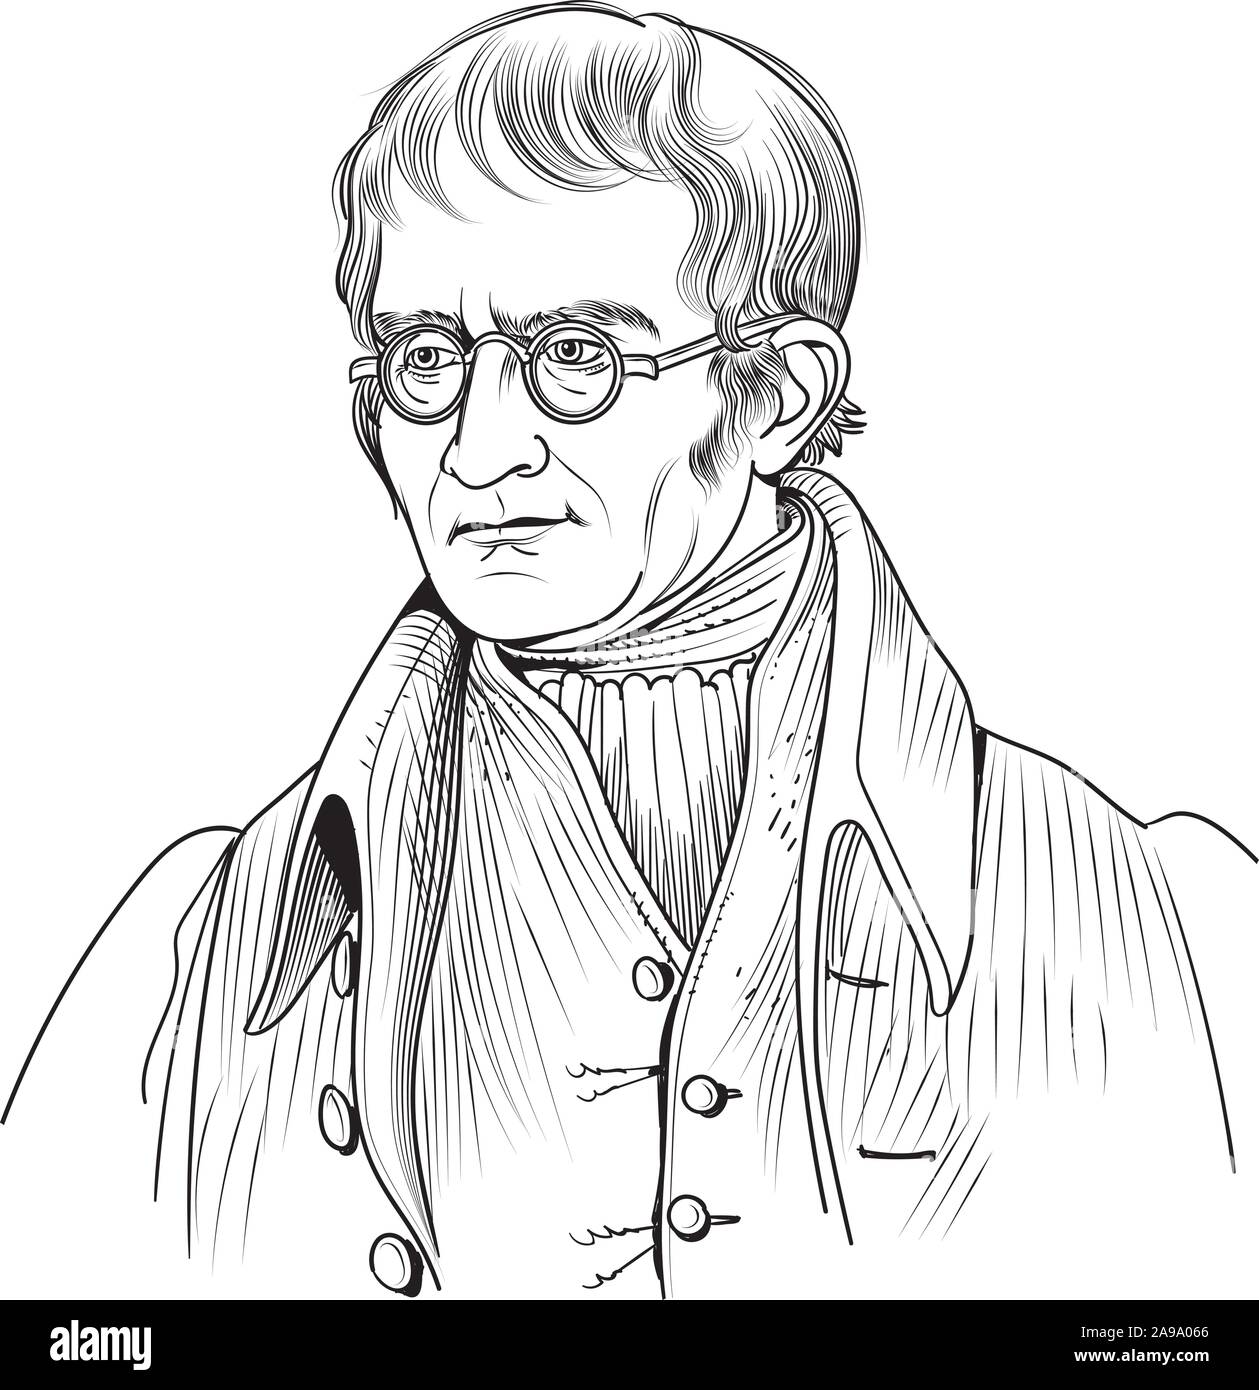 John Dalton cartoon ritratto. Egli era un inglese un chimico, fisico e meteorologo. Egli ha introdotto la moderna teoria atomica nella chimica. Illustrazione Vettoriale